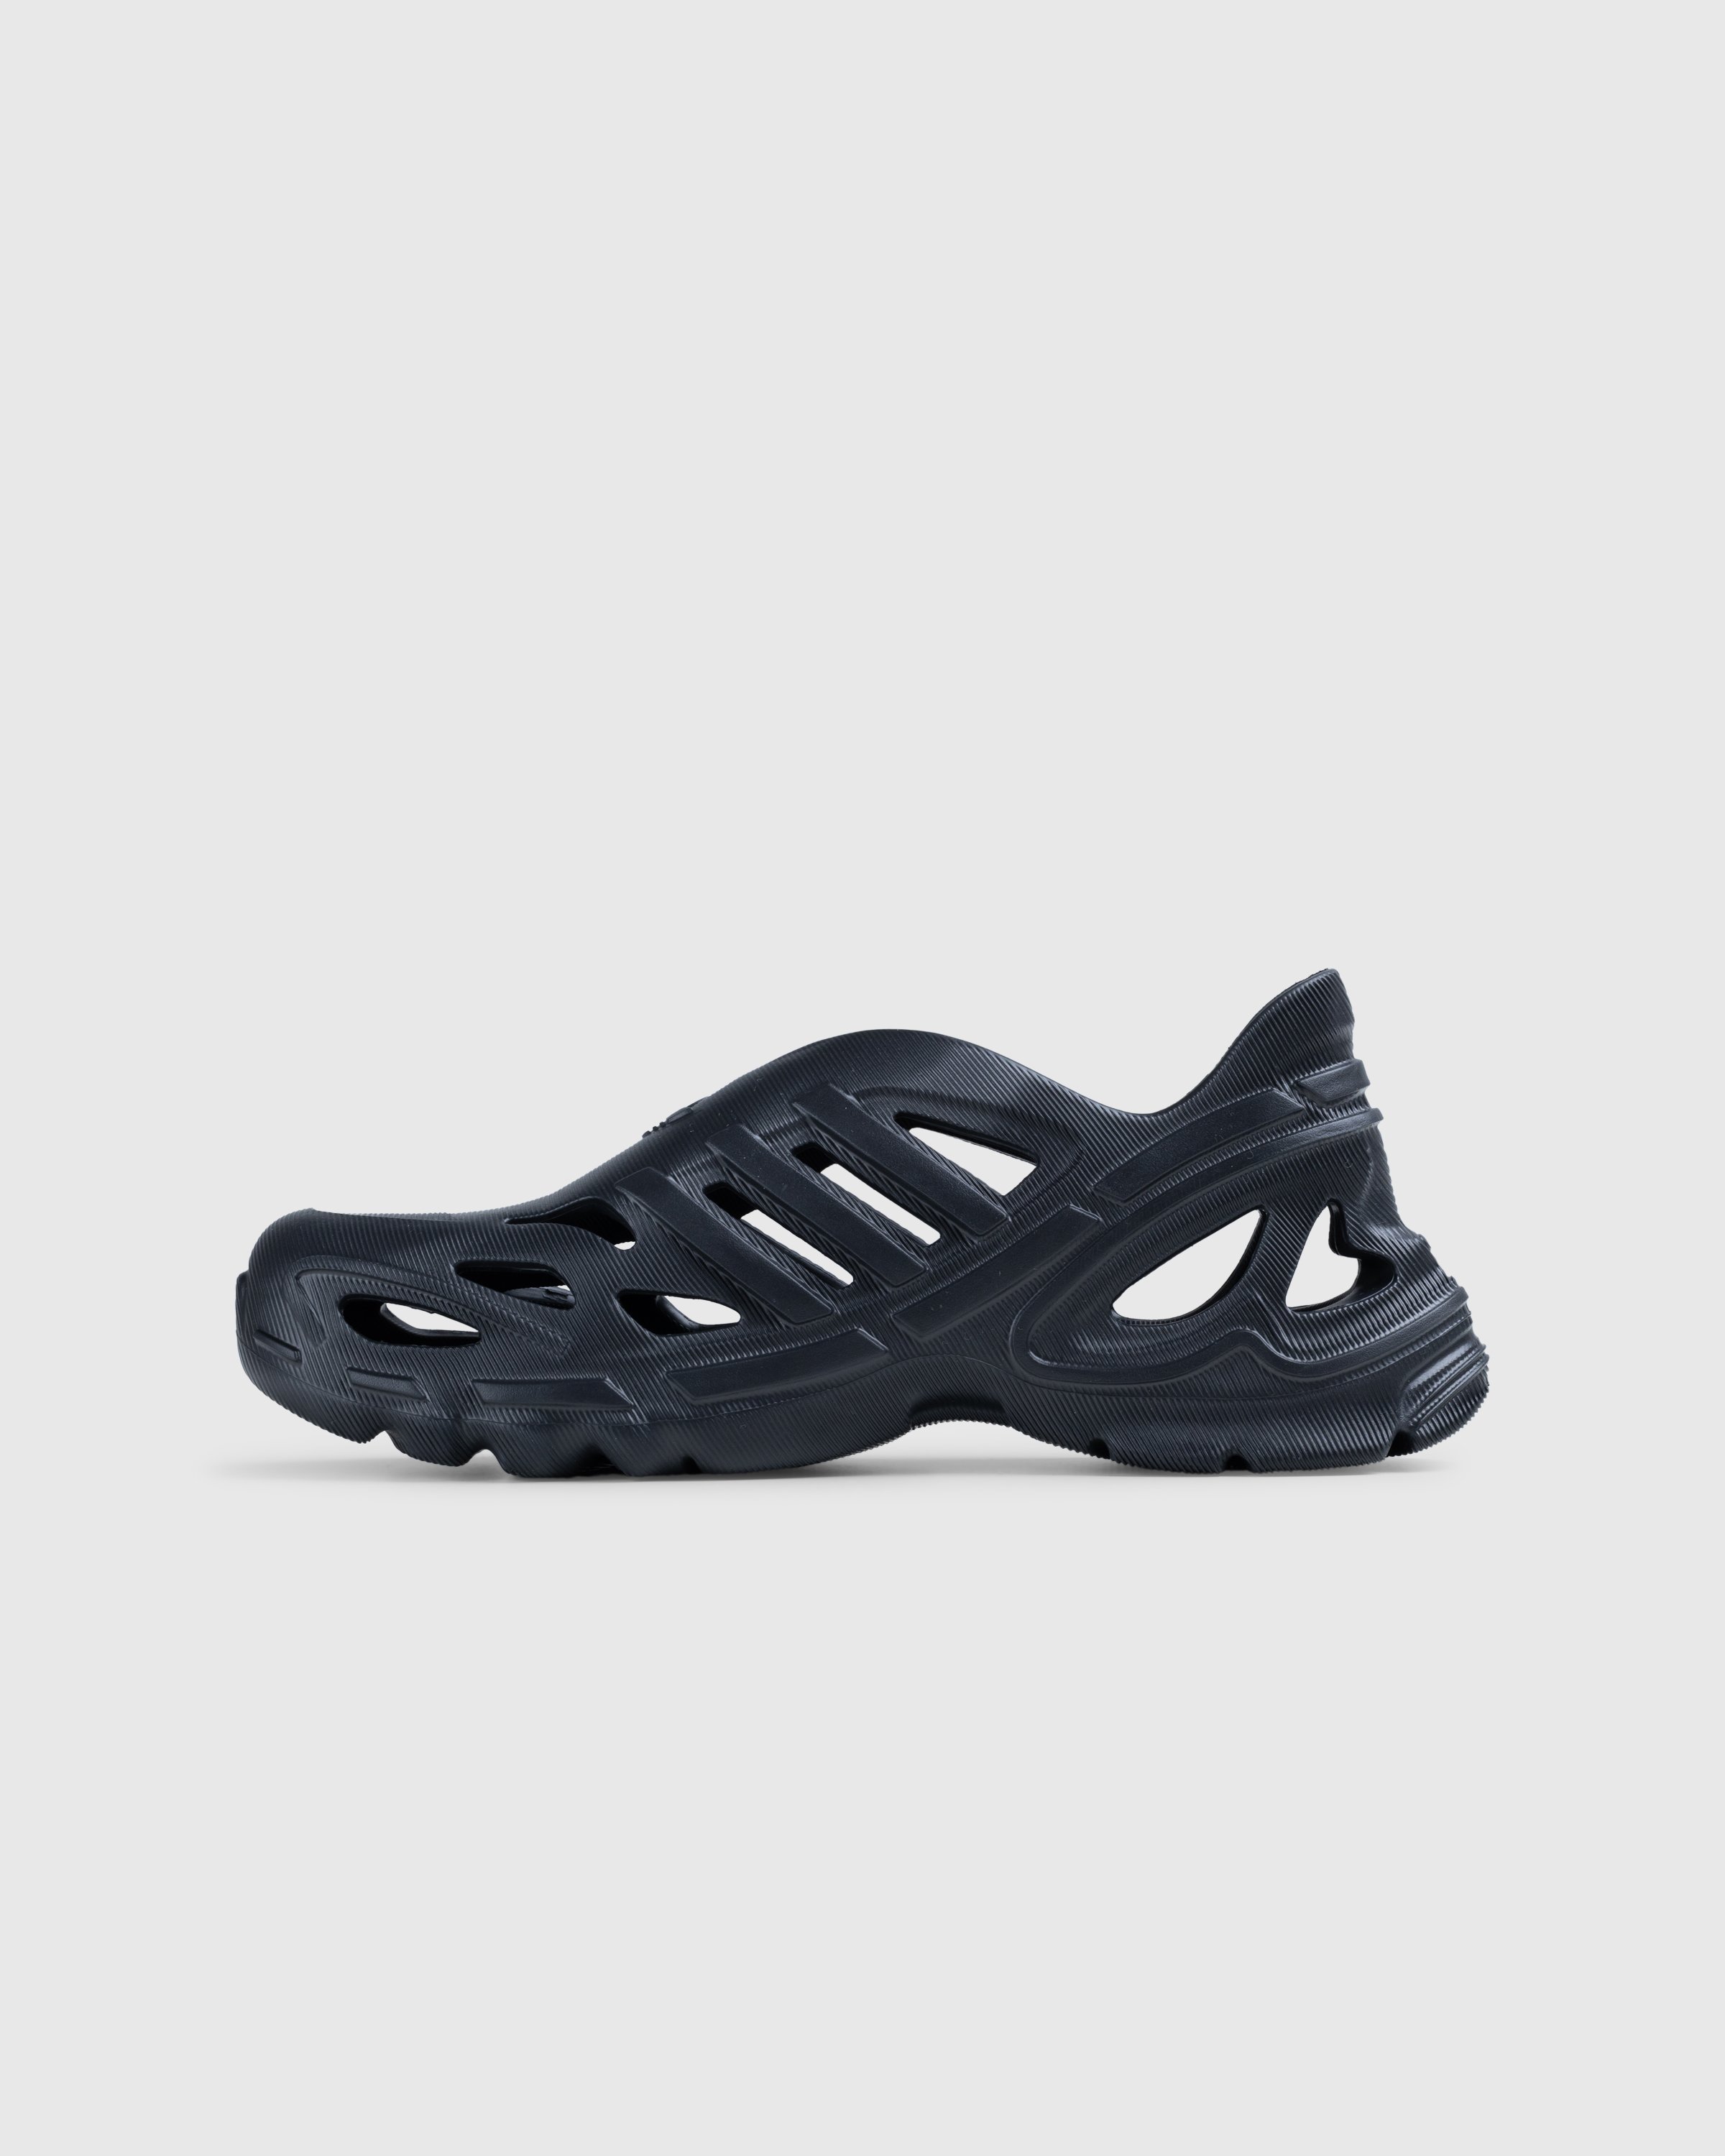 Adidas - Adifom Supernova Core Black - Footwear - Black - Image 2